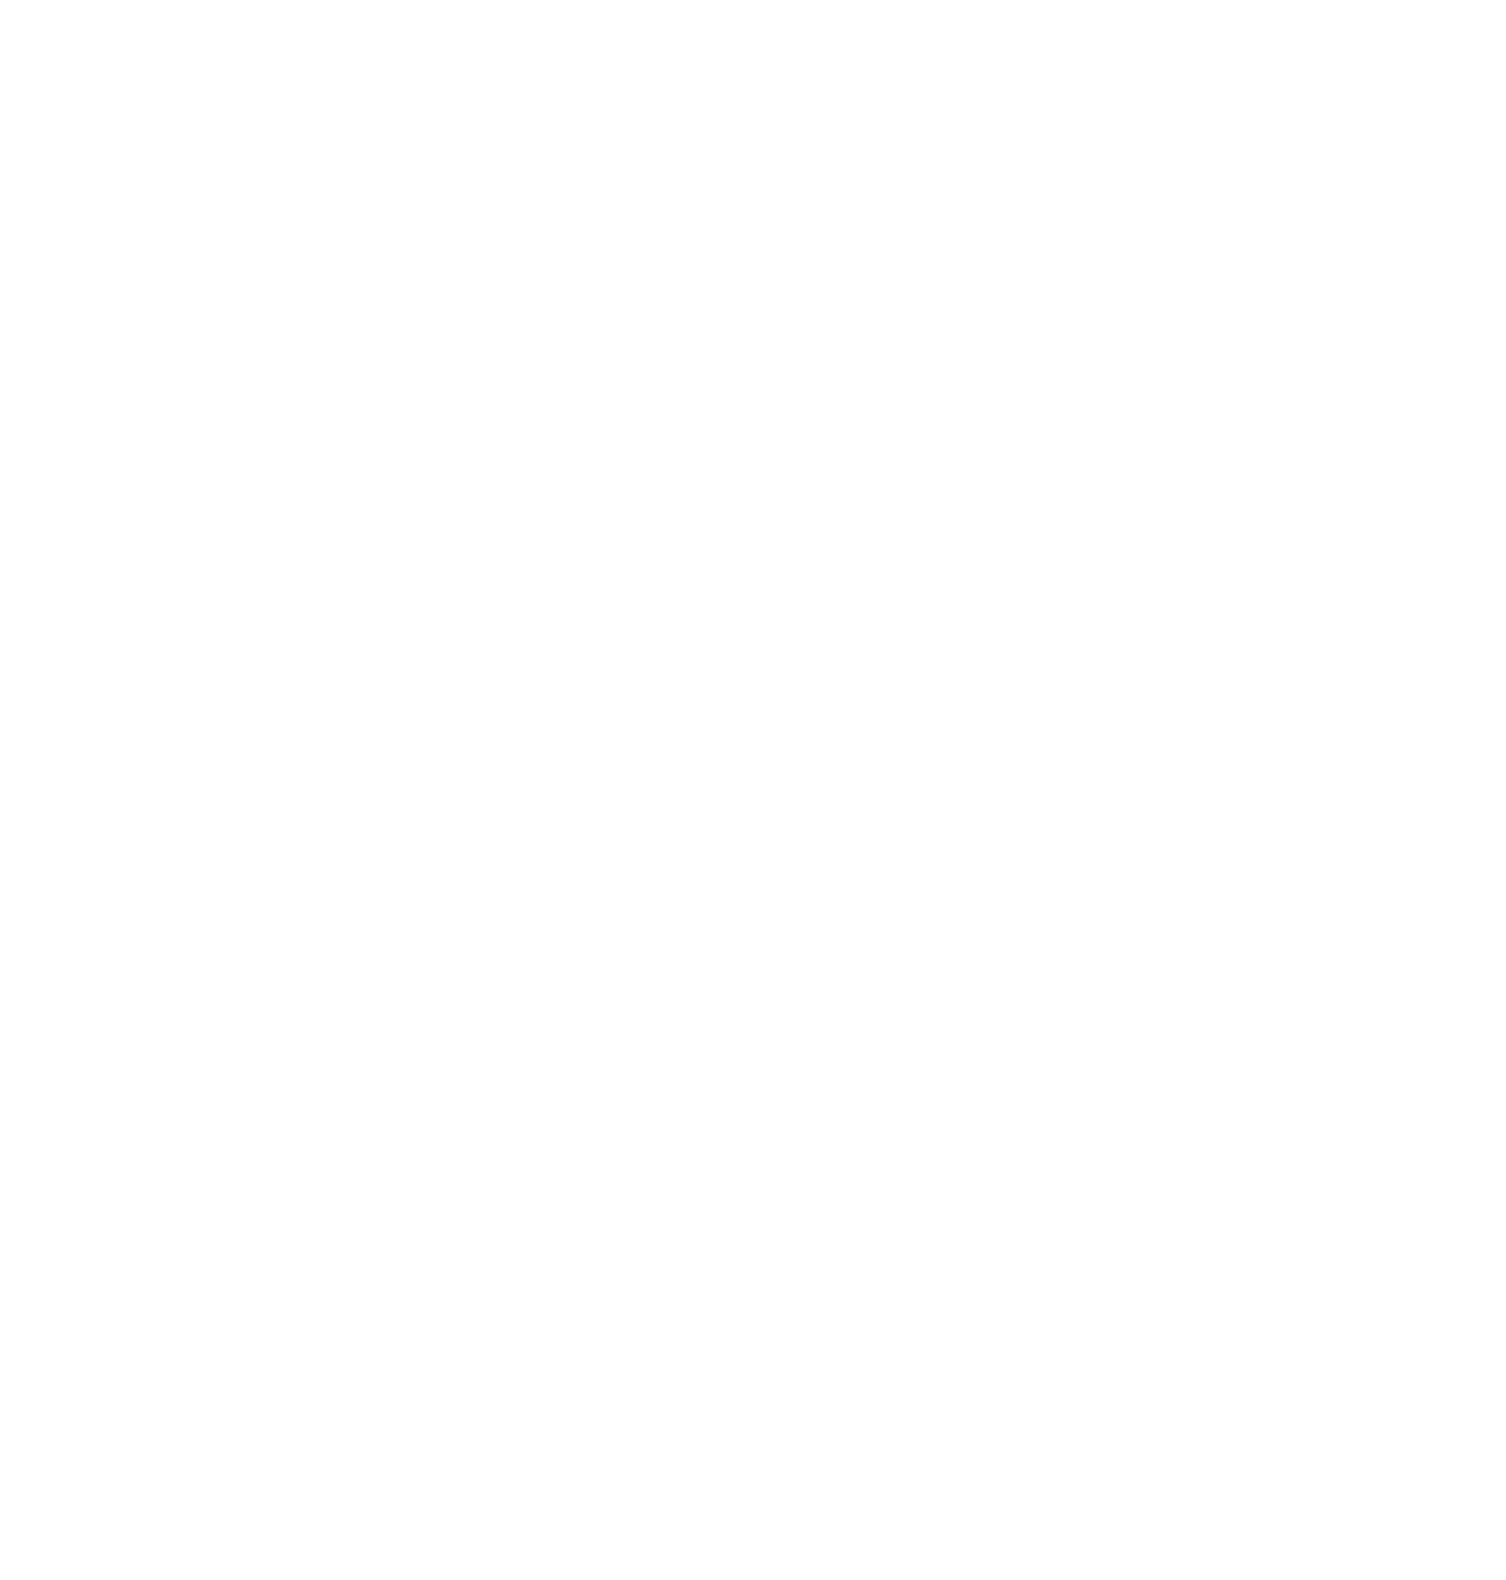 Aselsan logo for dark backgrounds (transparent PNG)